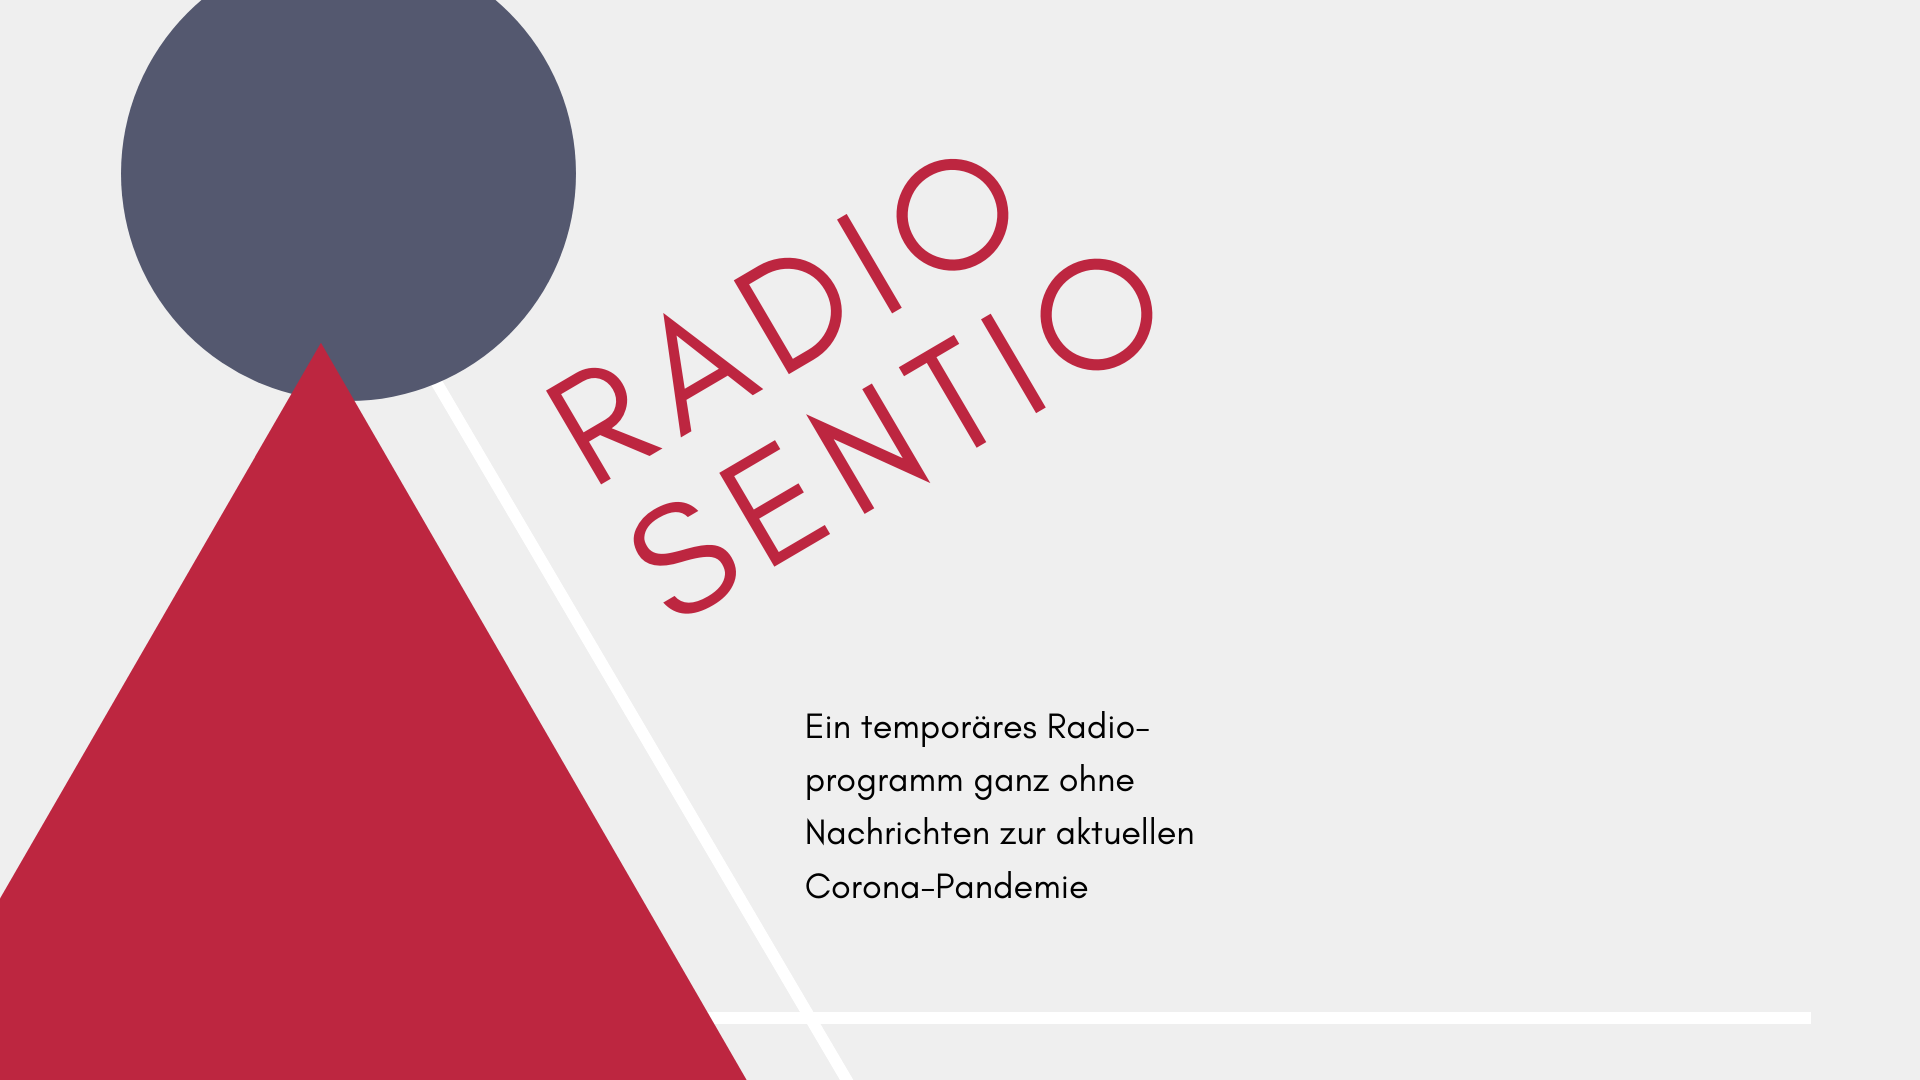 Radio Sentio - ein Projekt aus dem Lockdown